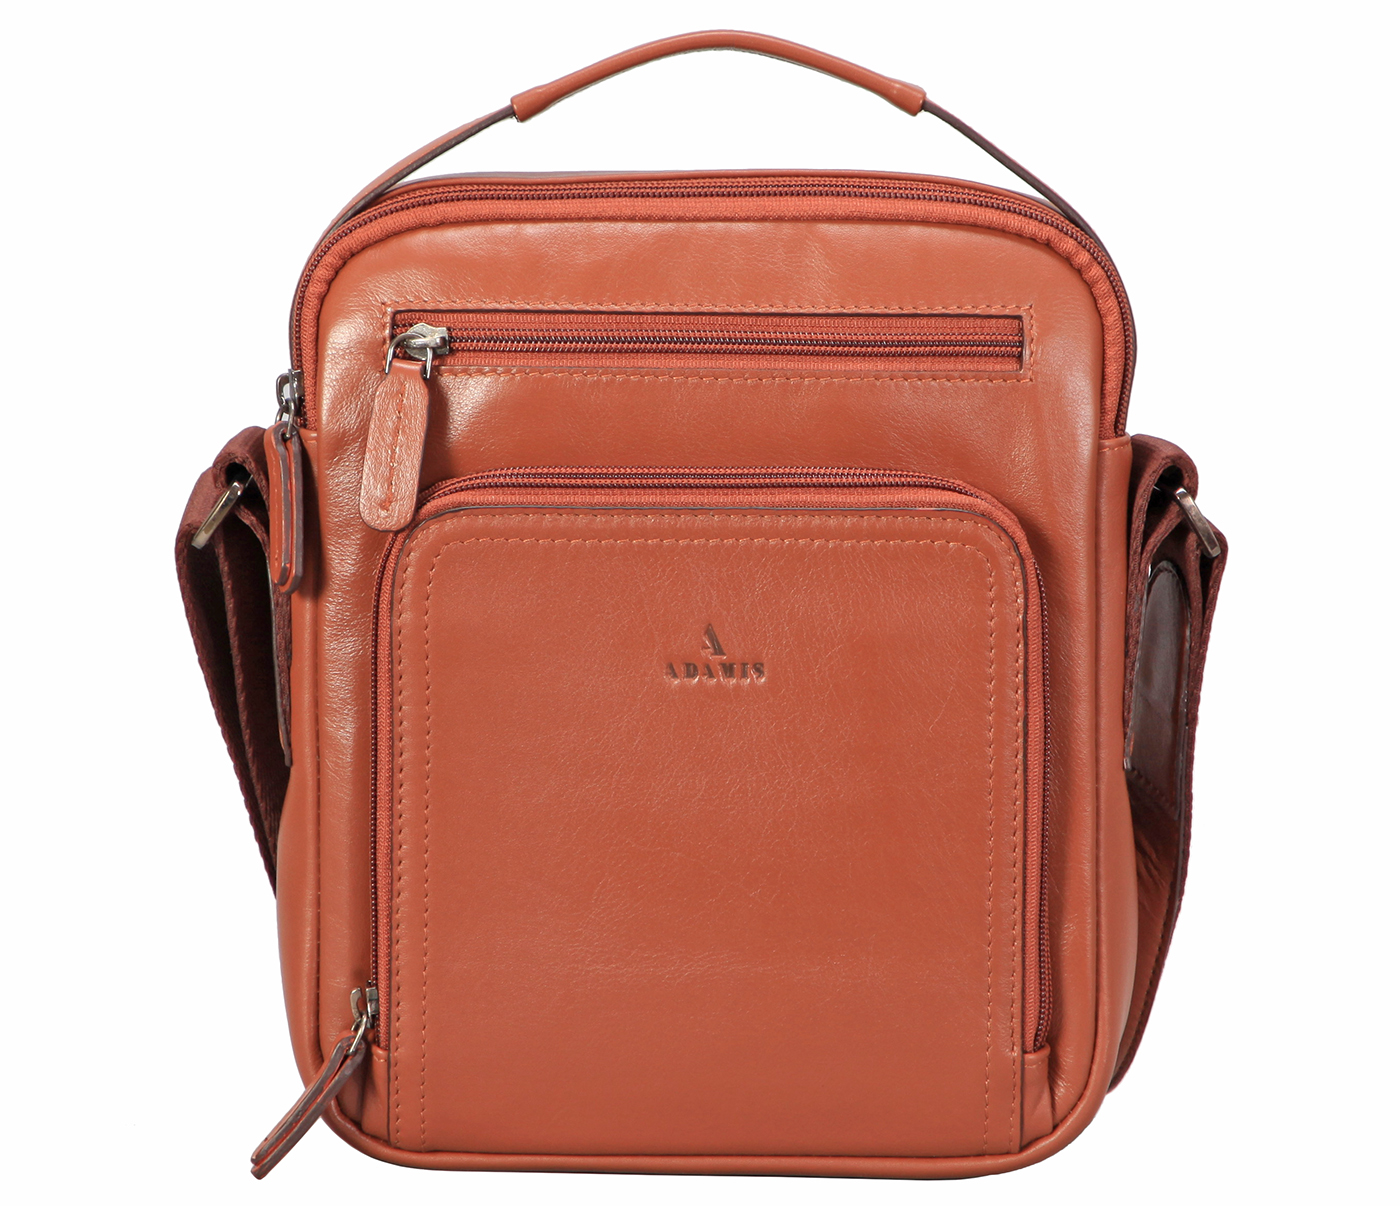 Rafael Leather Bag(Tan)P38